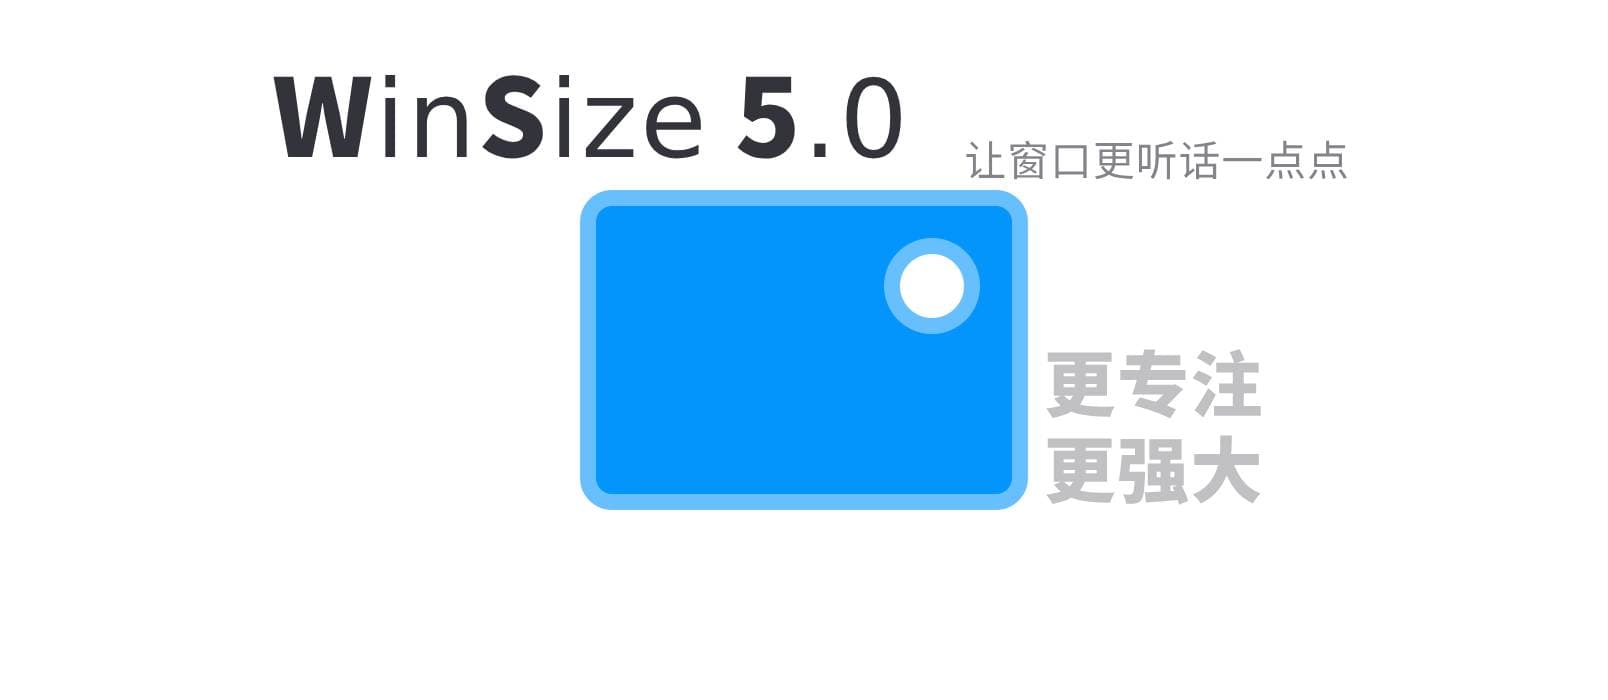 WinSize 5.0 – 让窗口更听话一点点｜Windows 窗口布局工具